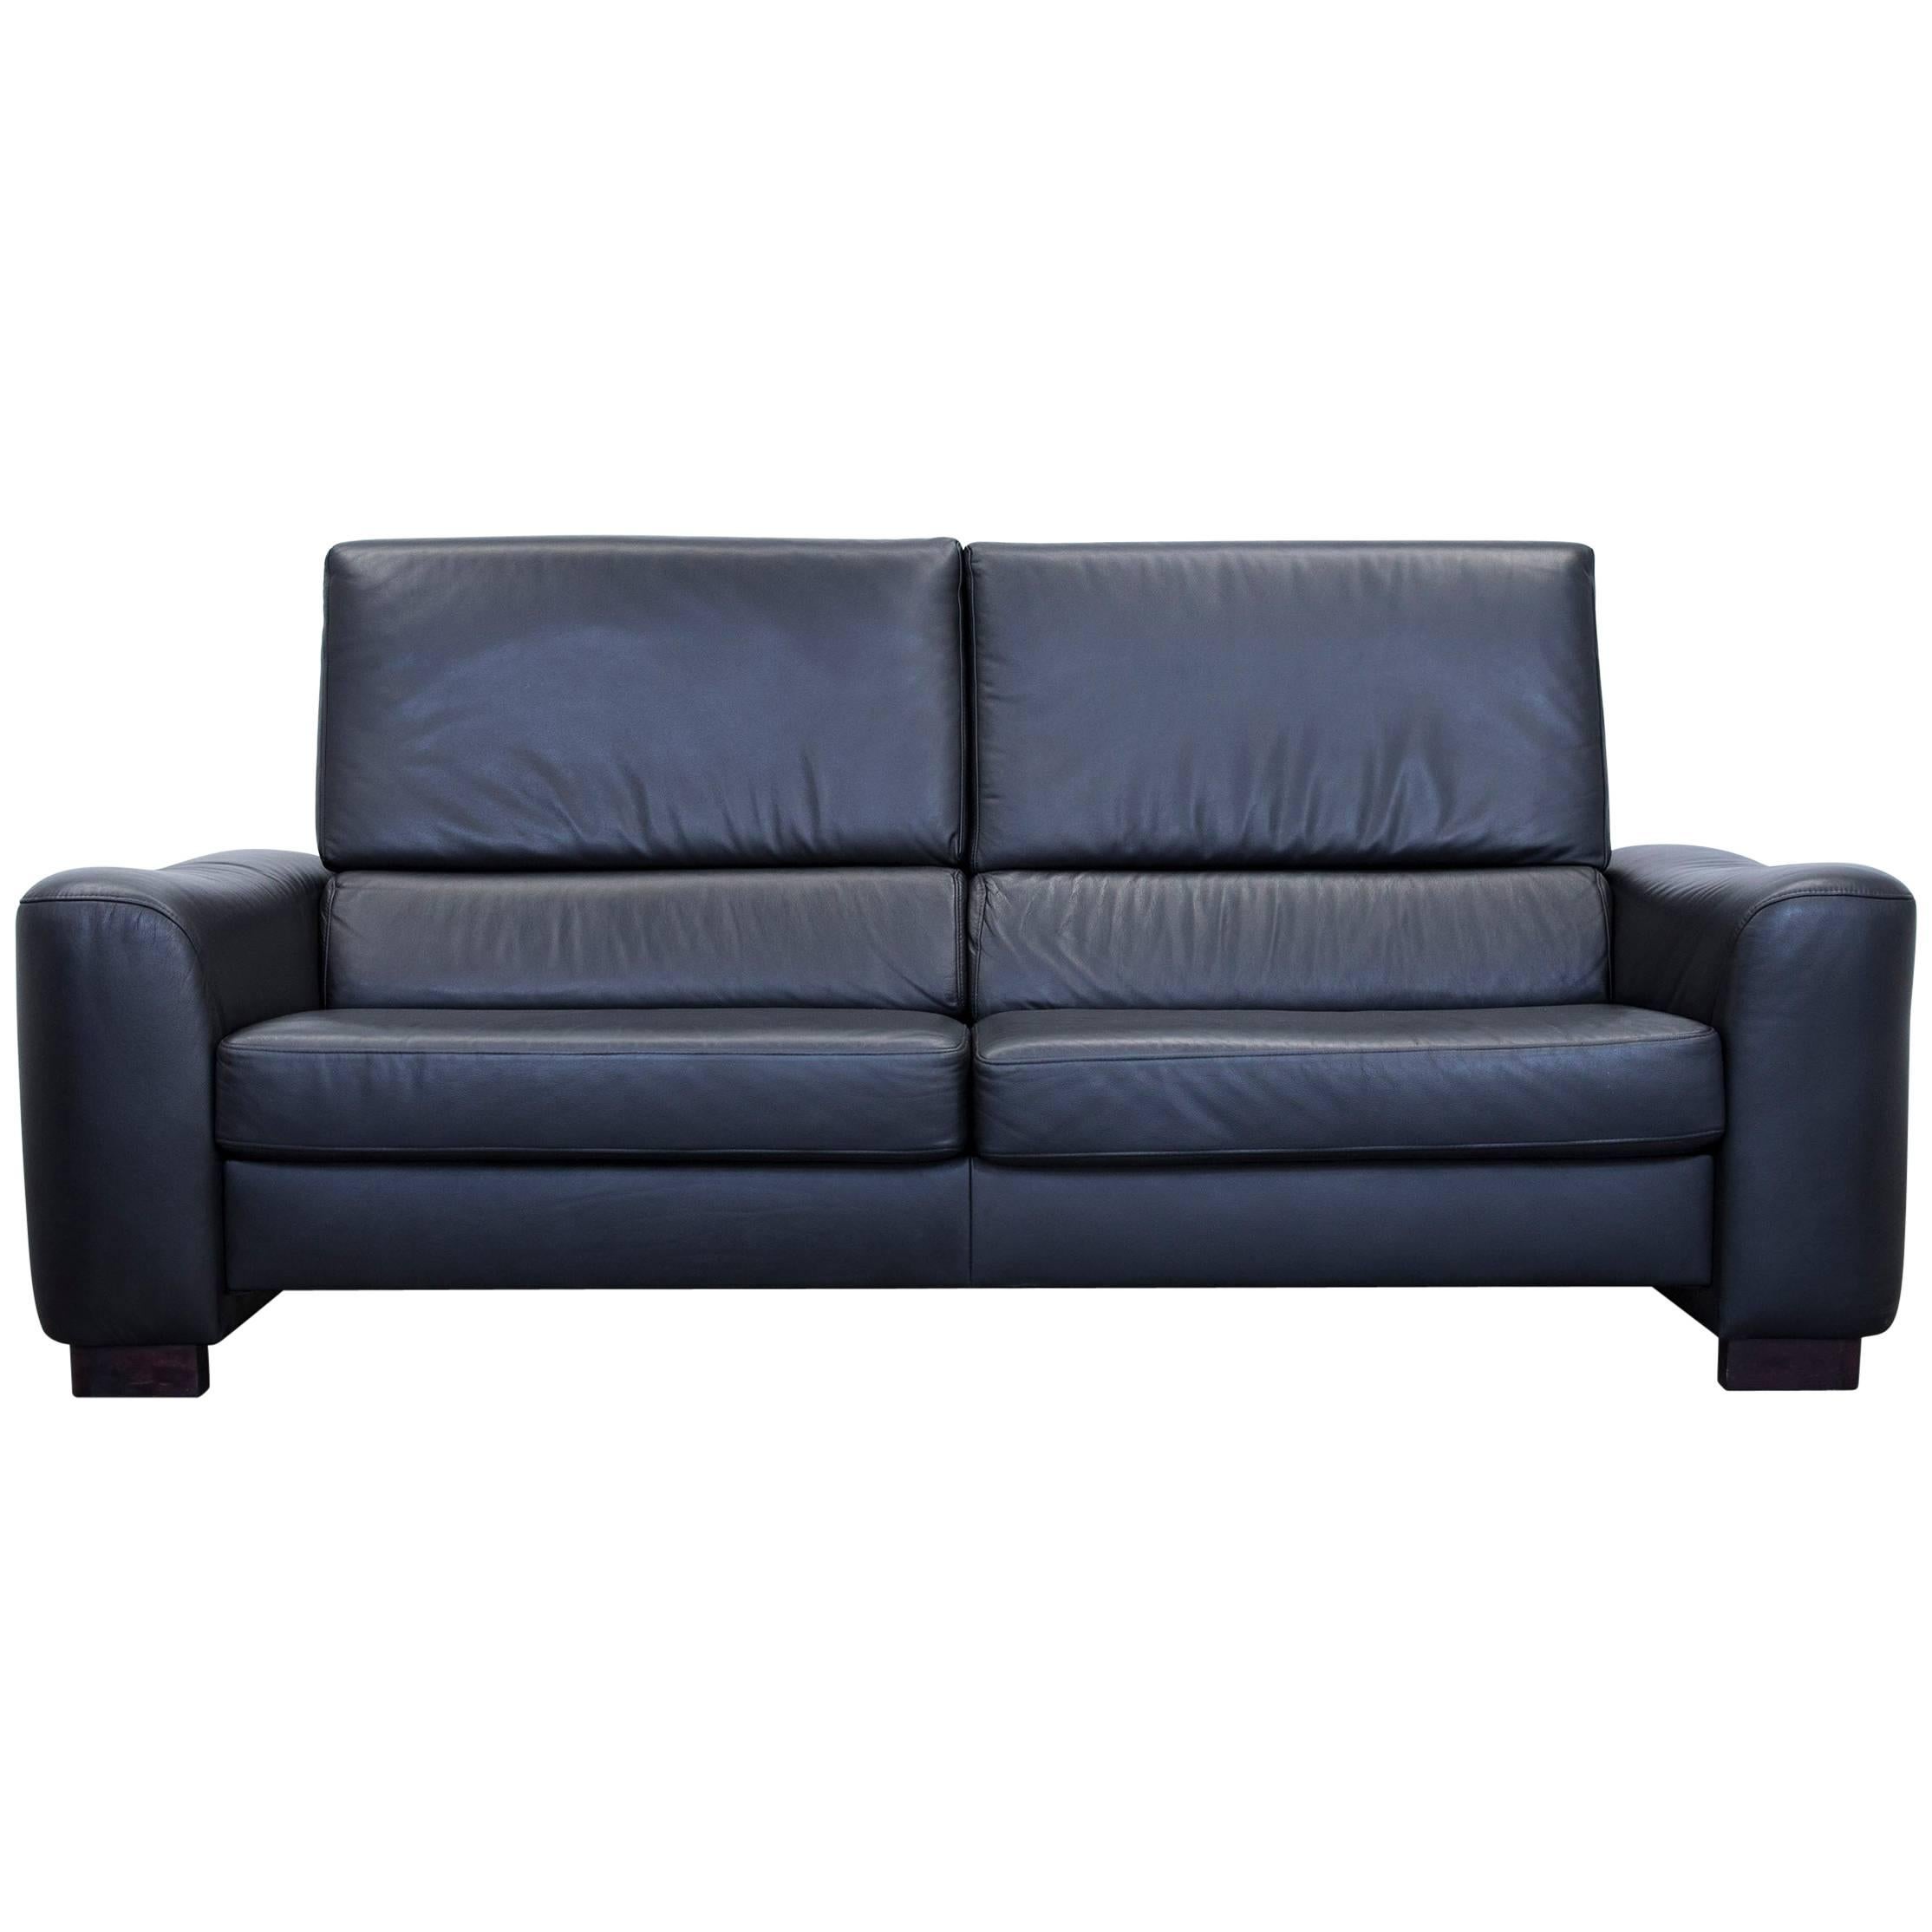 Ewald Schillig Designer Sofa Leather Black Three-Seat Couch Modern